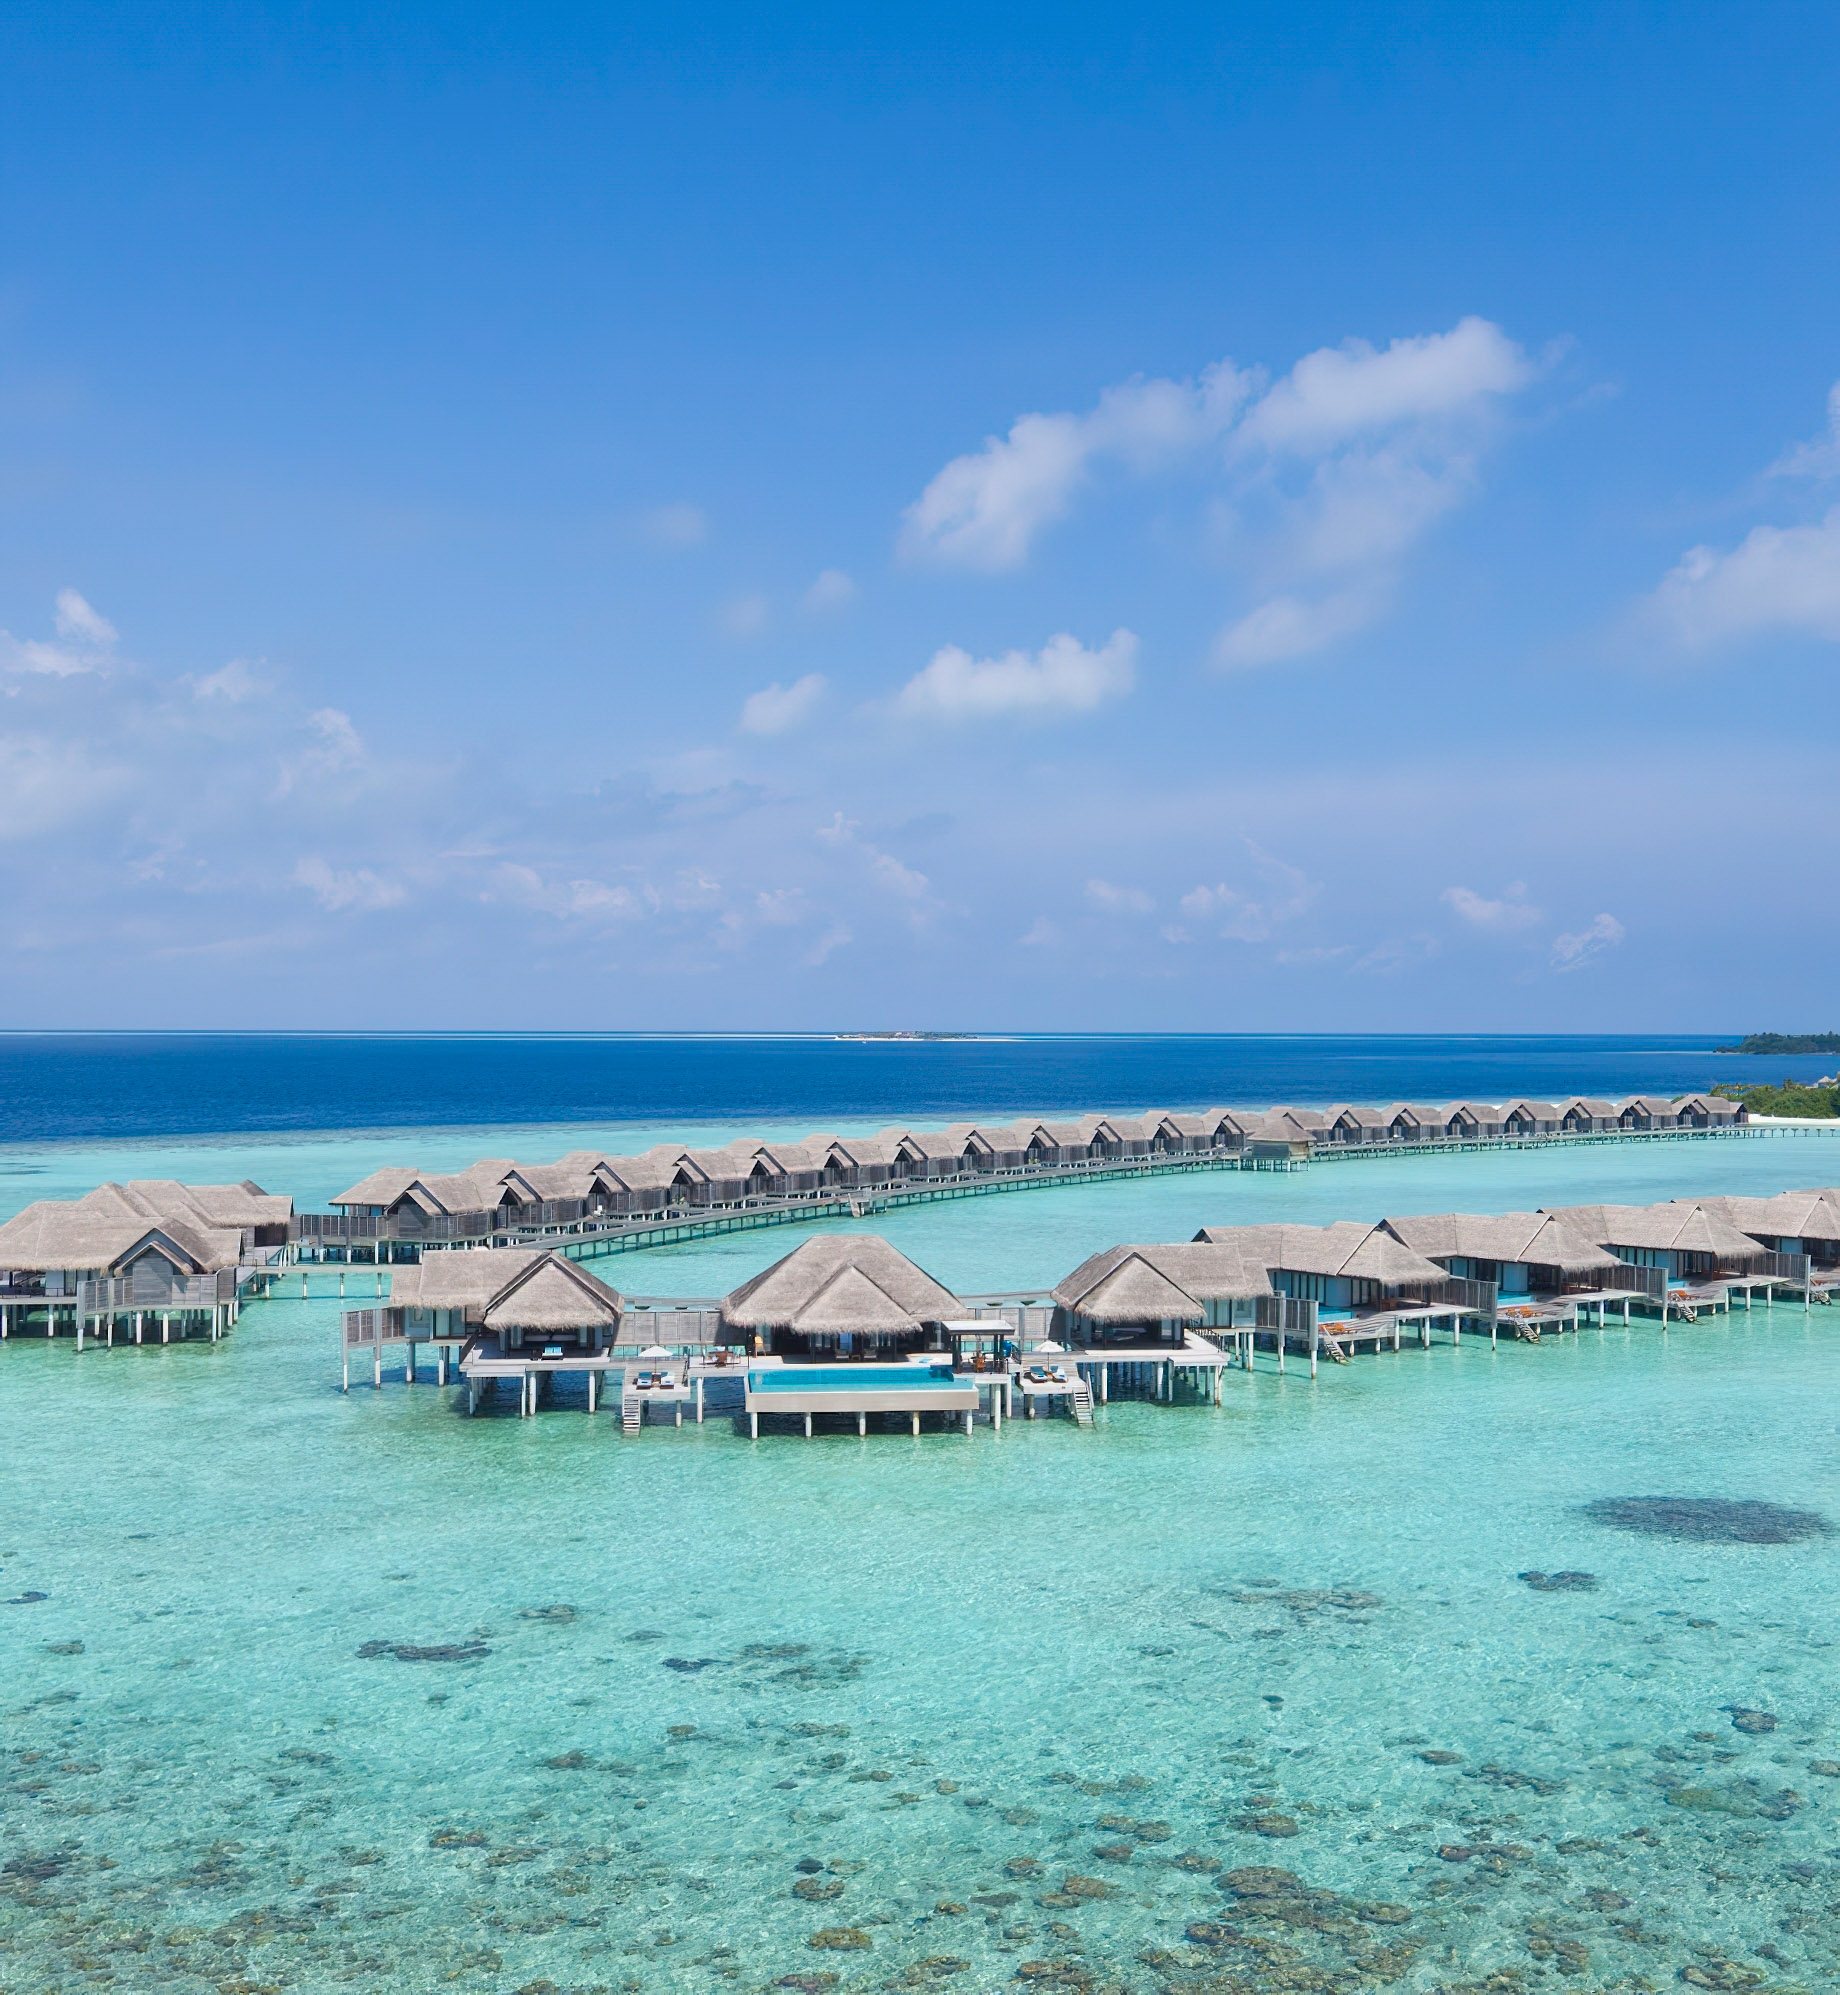 Anantara Kihavah Maldives Villas Resort – Baa Atoll, Maldives – Two Bedroom Sunset Over Water Pool Residence Aerial View